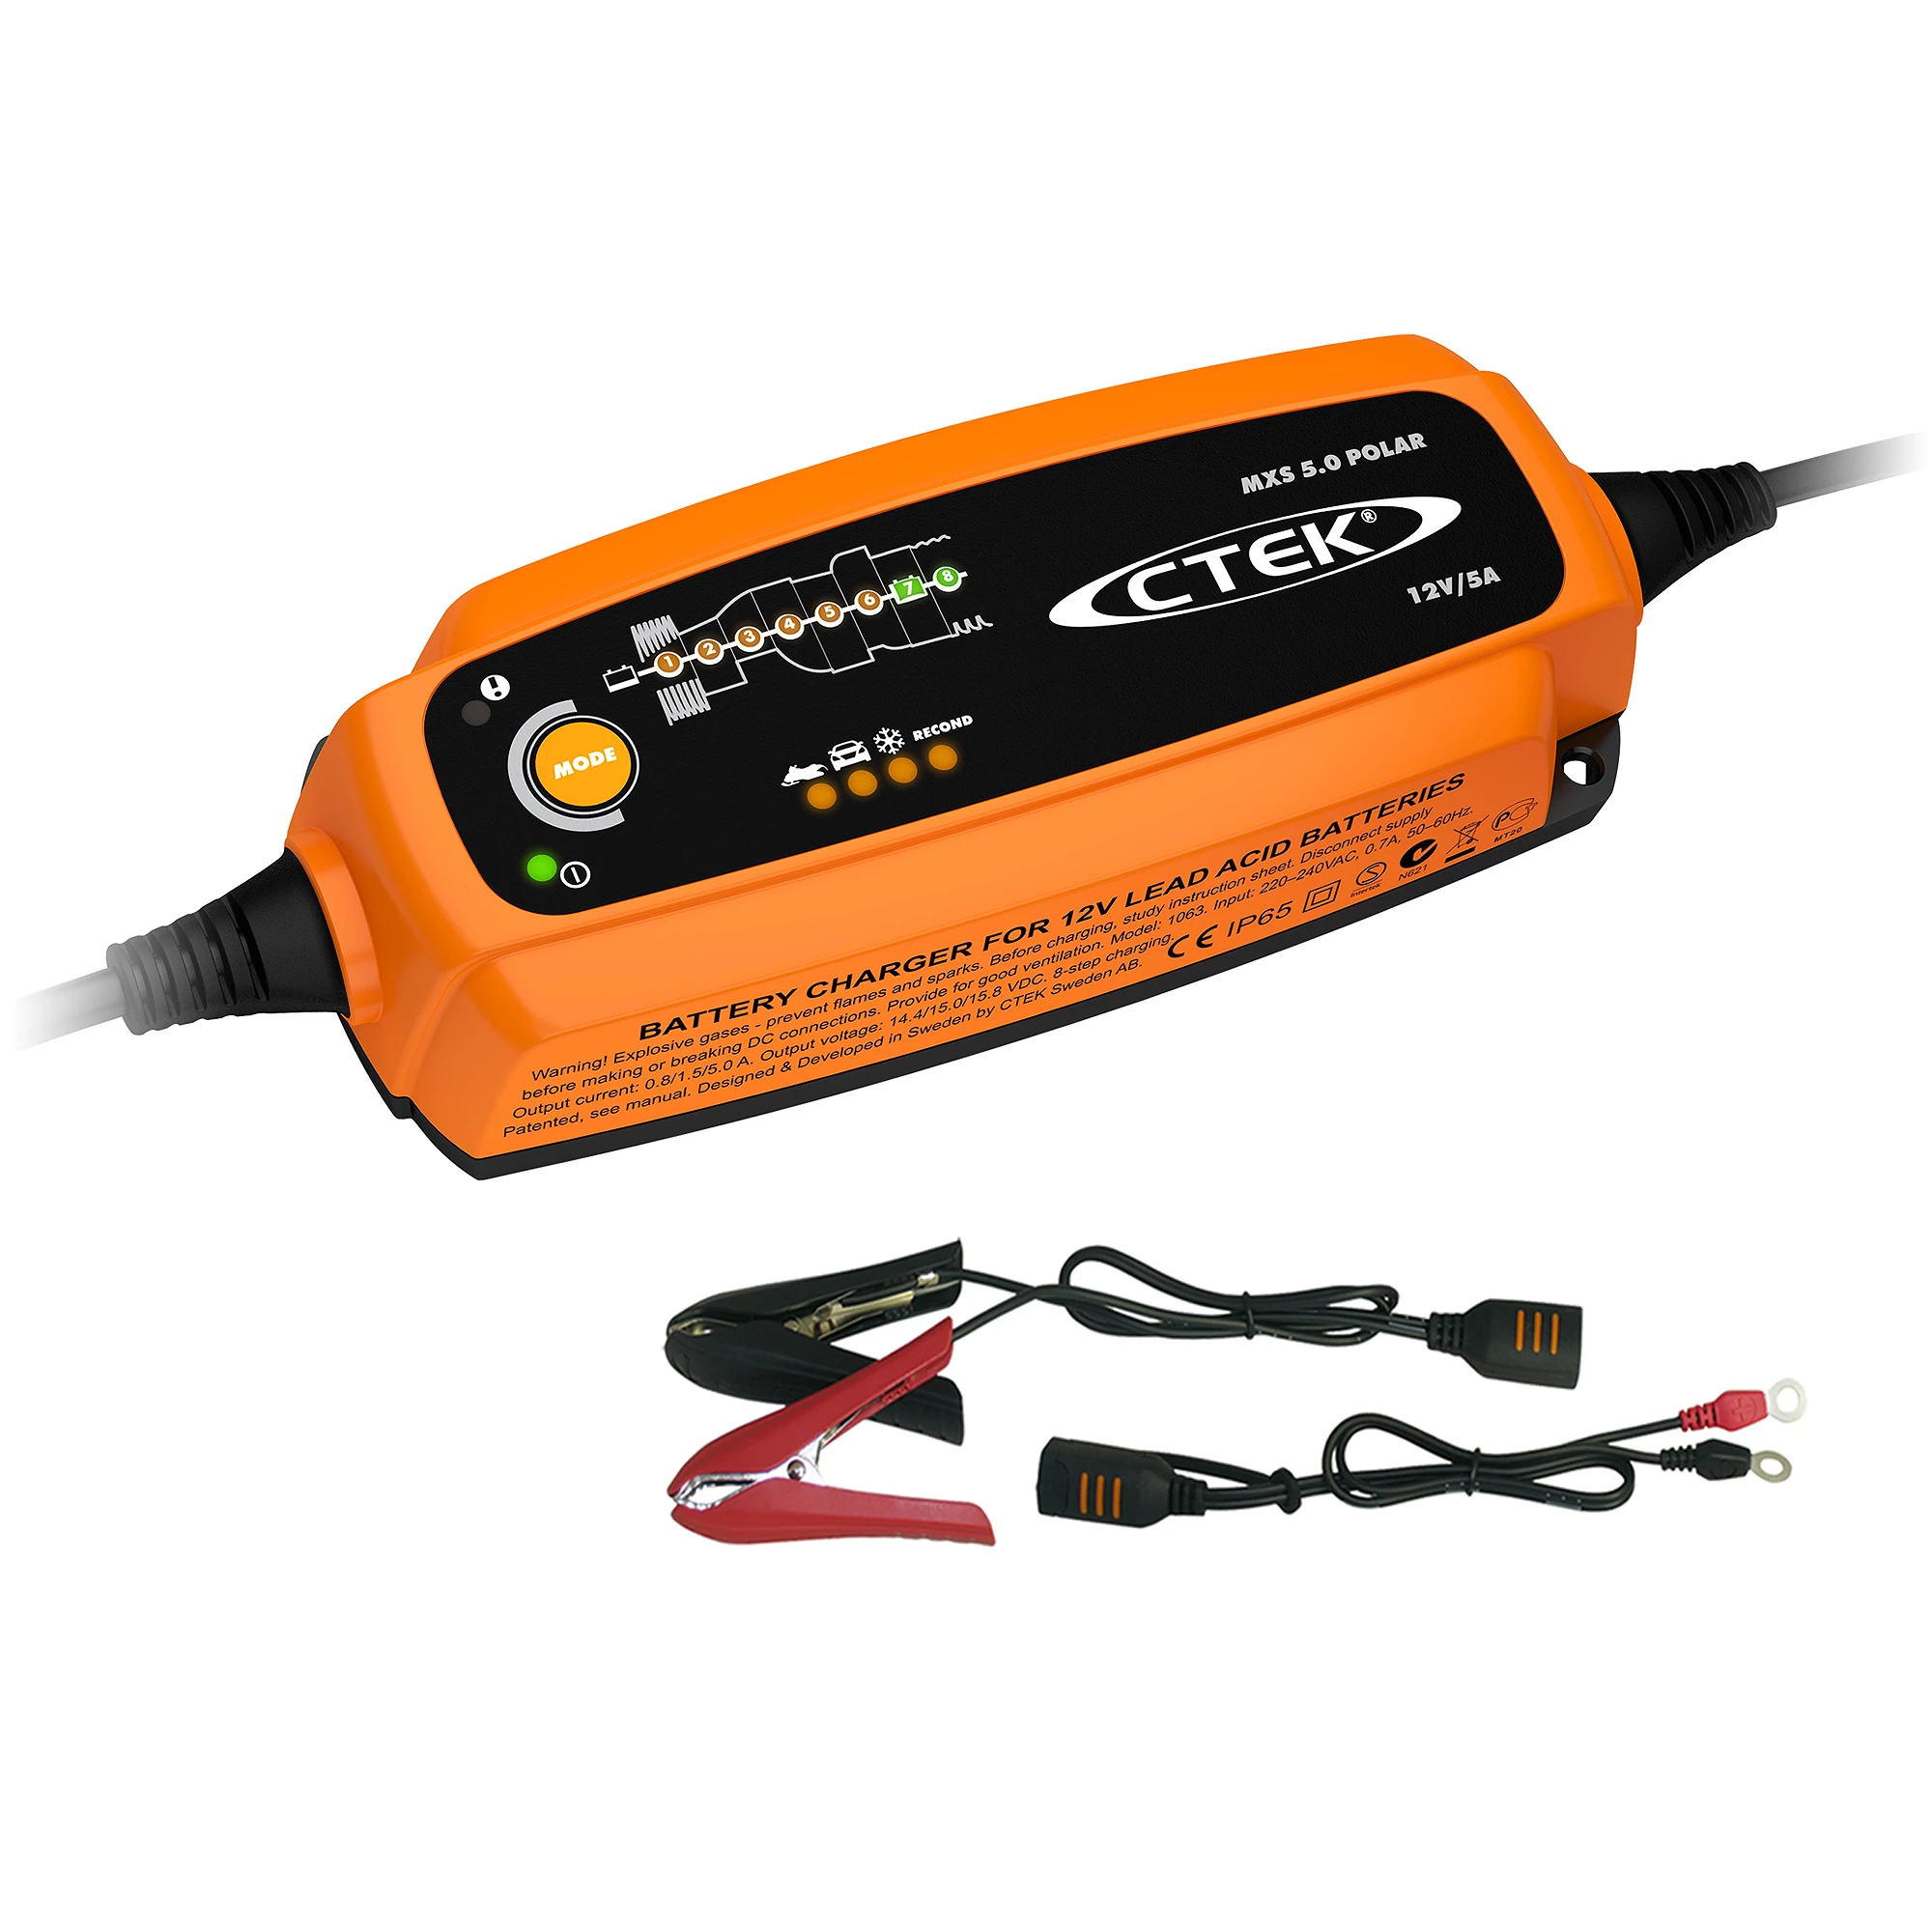 CTEK MXS 5.0 Polar (56-855) Batterie-Ladegerät, vollautomatisch u.a. für  Auto, Boot u.a. 12V 5A